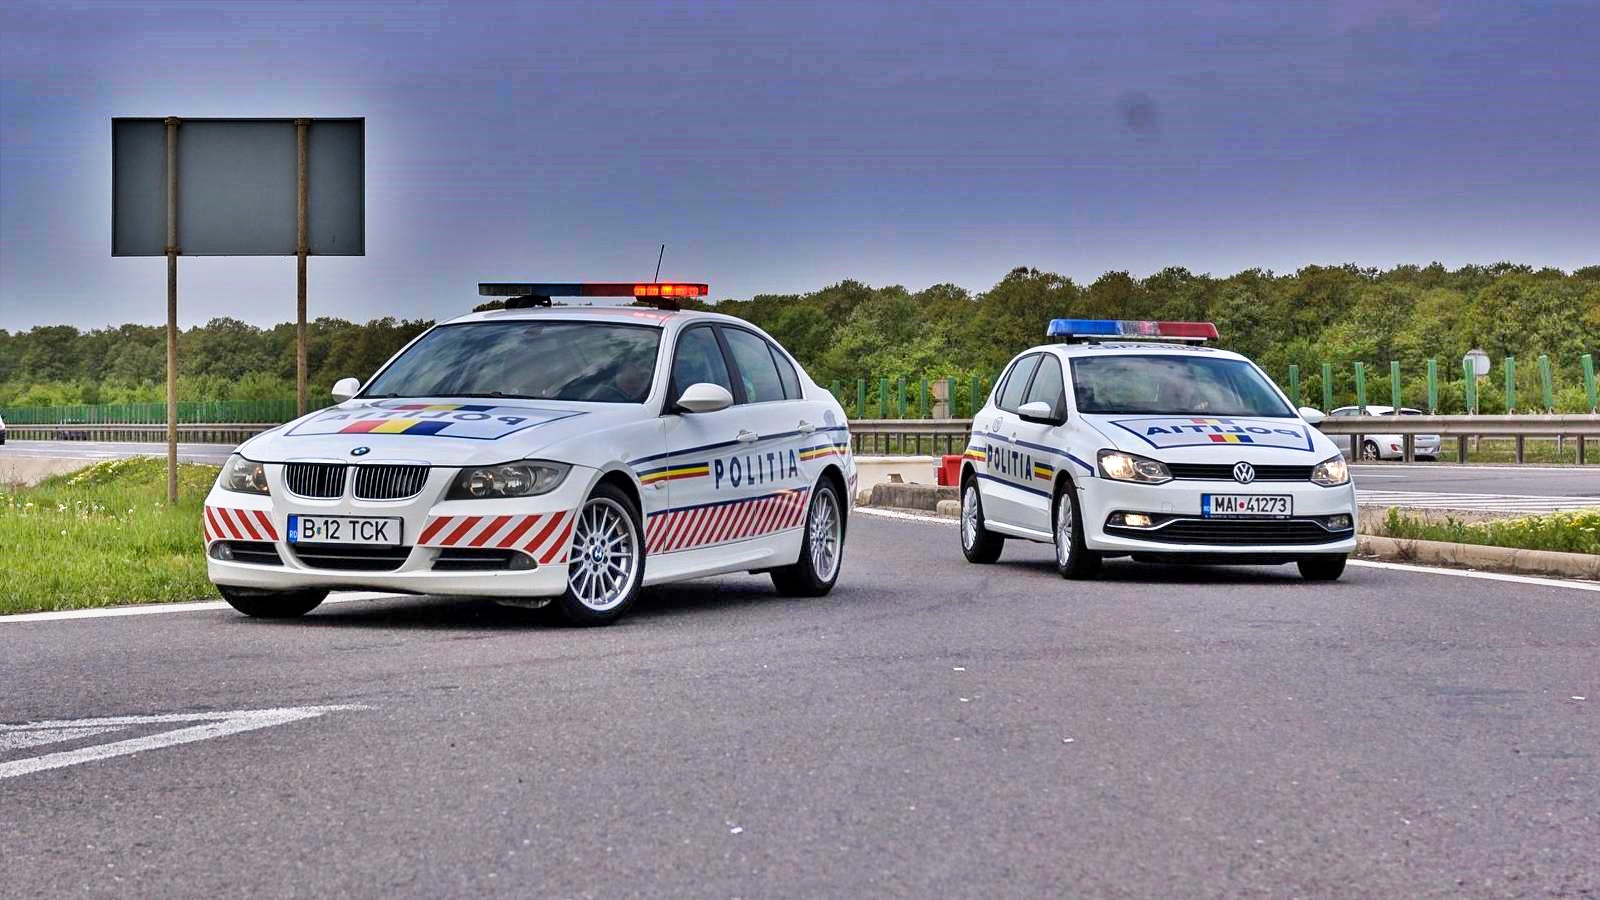 Rumænsk politi ADVARSEL vedrørende bilsvindel